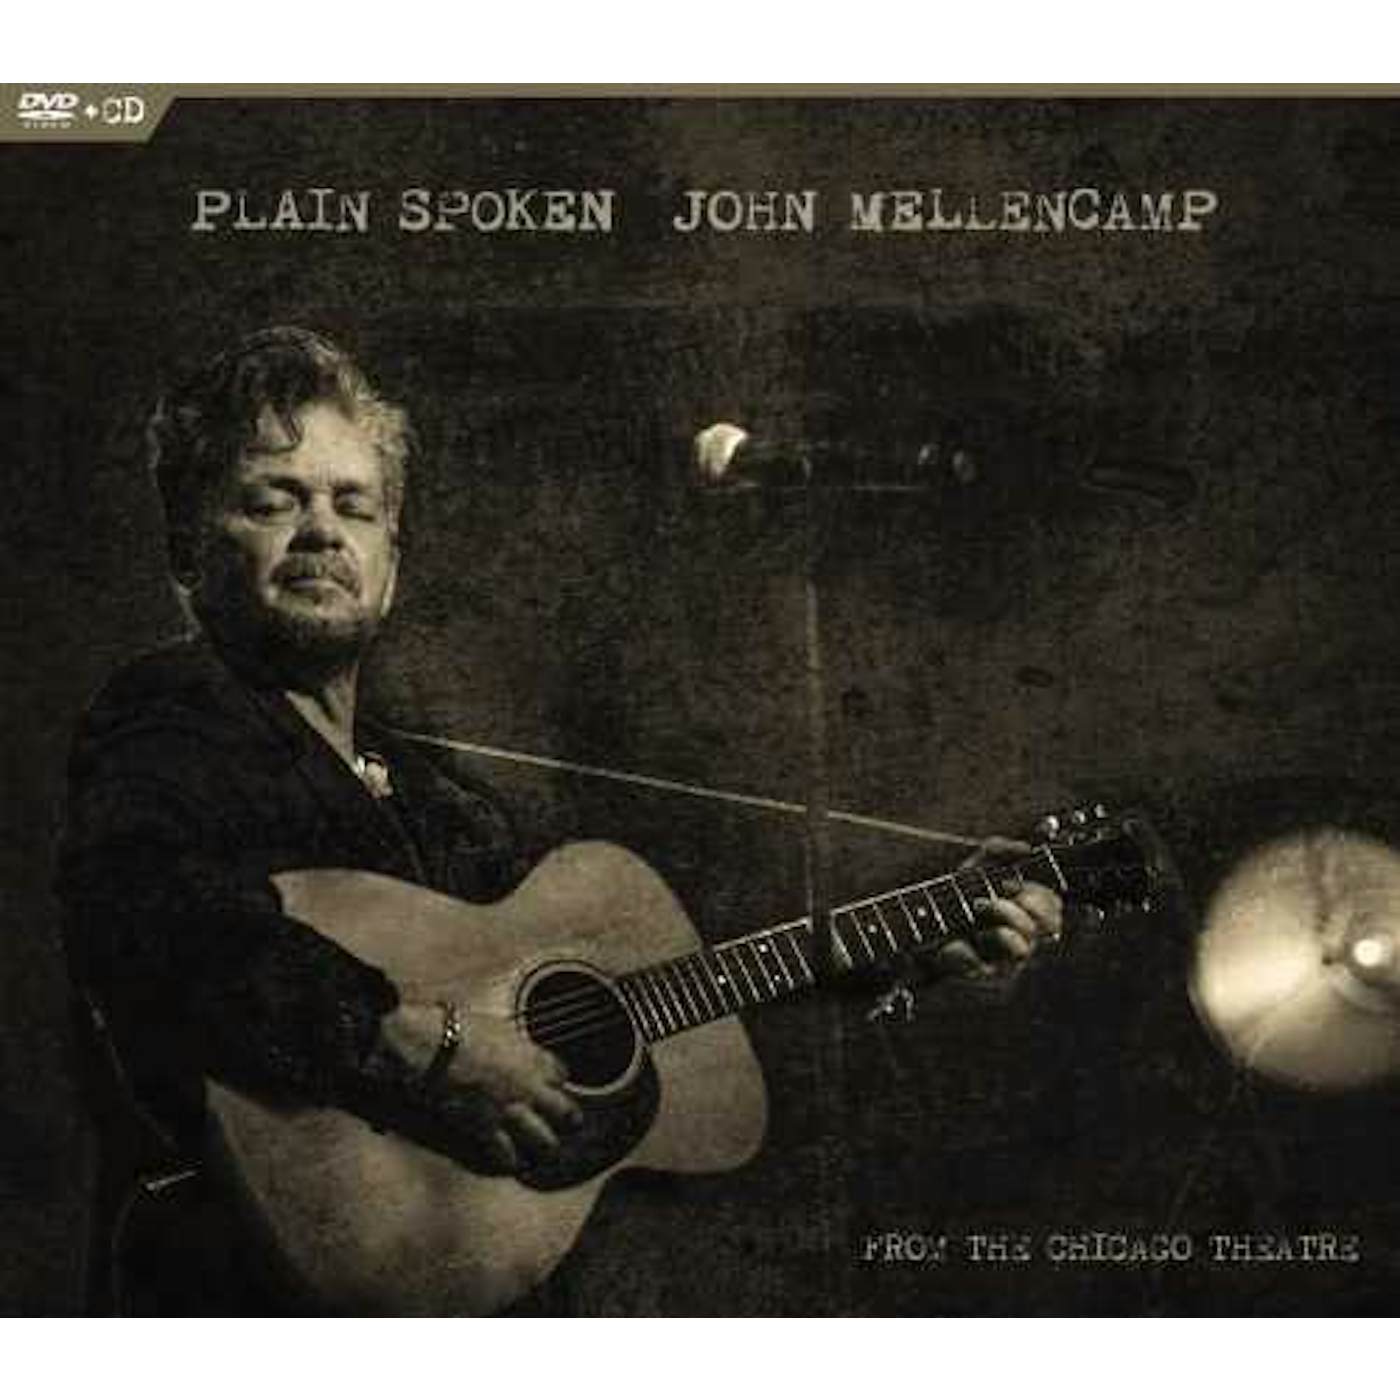 John Mellencamp PLAIN SPOKEN FROM THE CHICAGO THEATRE CD